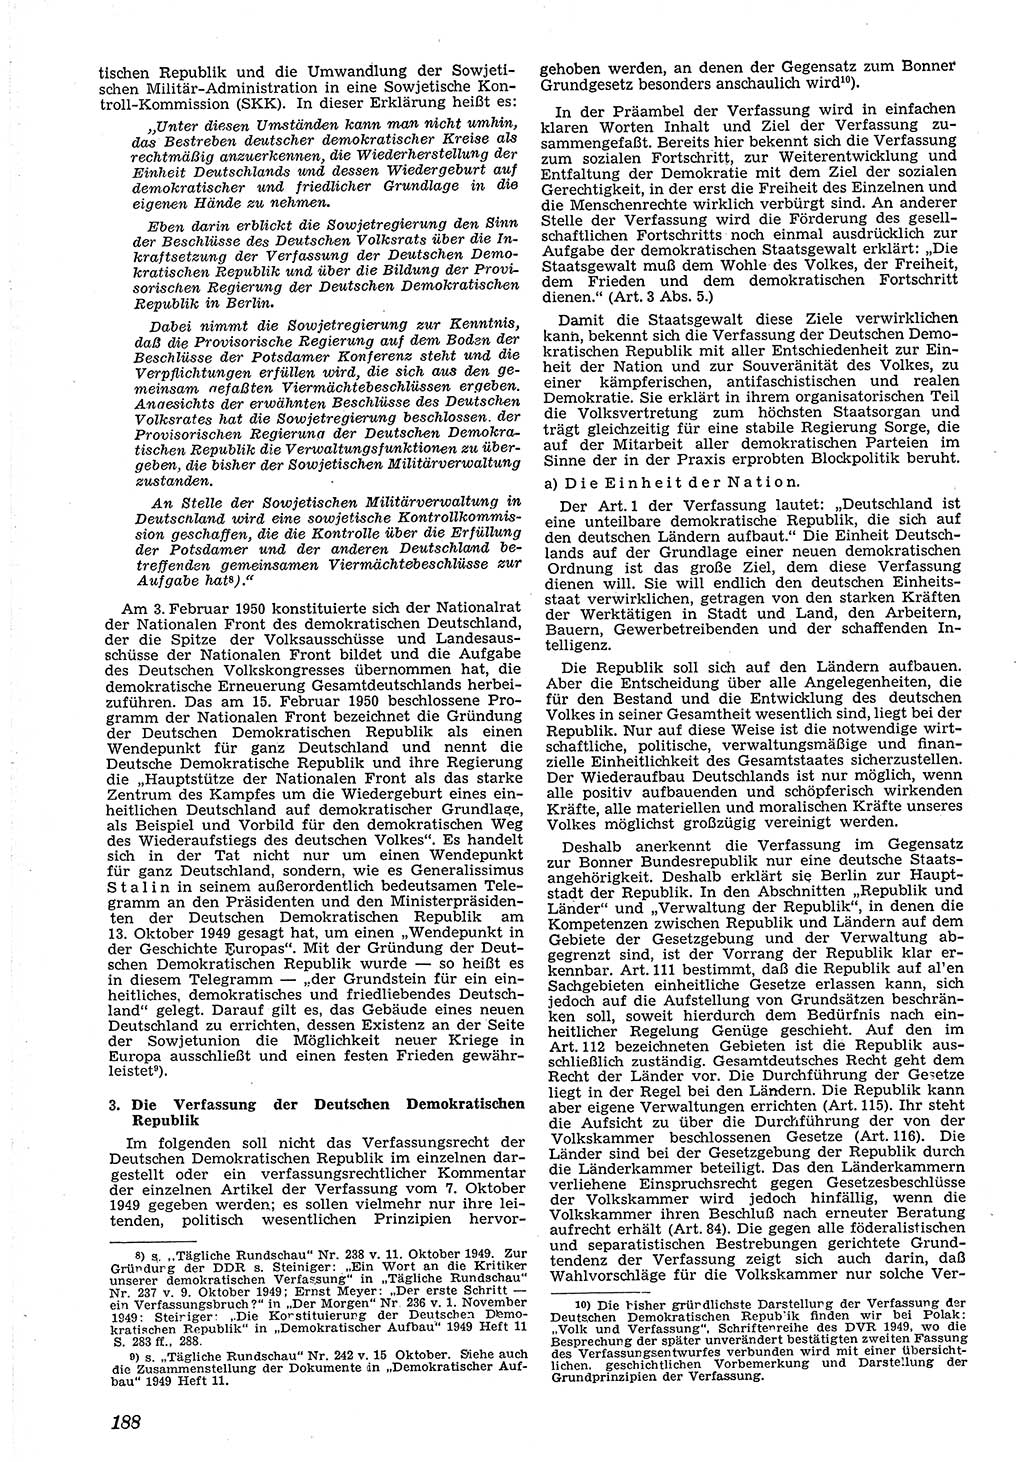 Neue Justiz (NJ), Zeitschrift für Recht und Rechtswissenschaft [Deutsche Demokratische Republik (DDR)], 4. Jahrgang 1950, Seite 188 (NJ DDR 1950, S. 188)